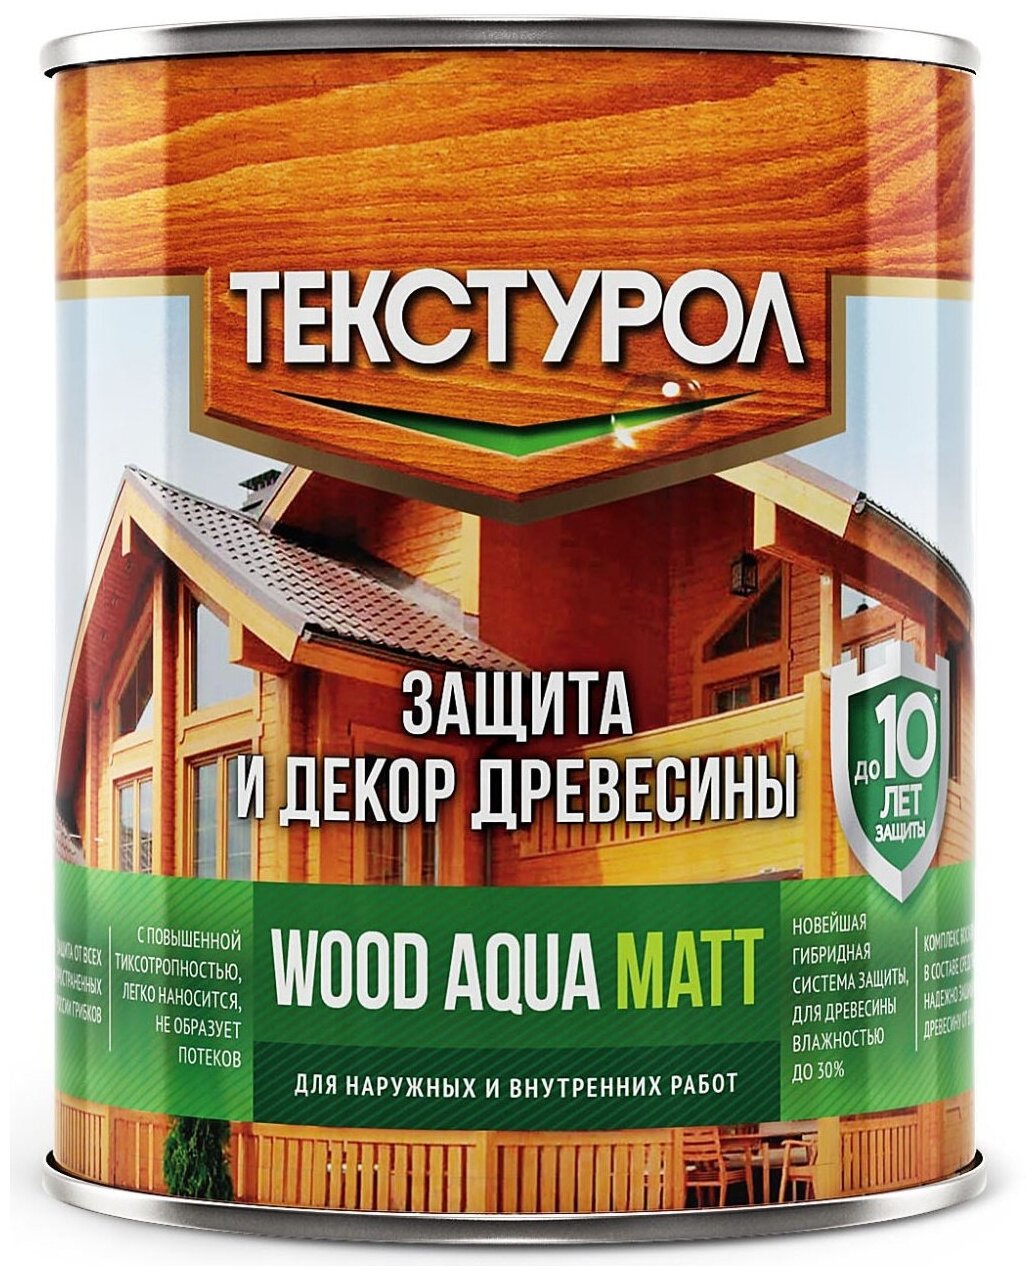 ТЕКСТУРОЛ пропитка Wood Aqua Matt